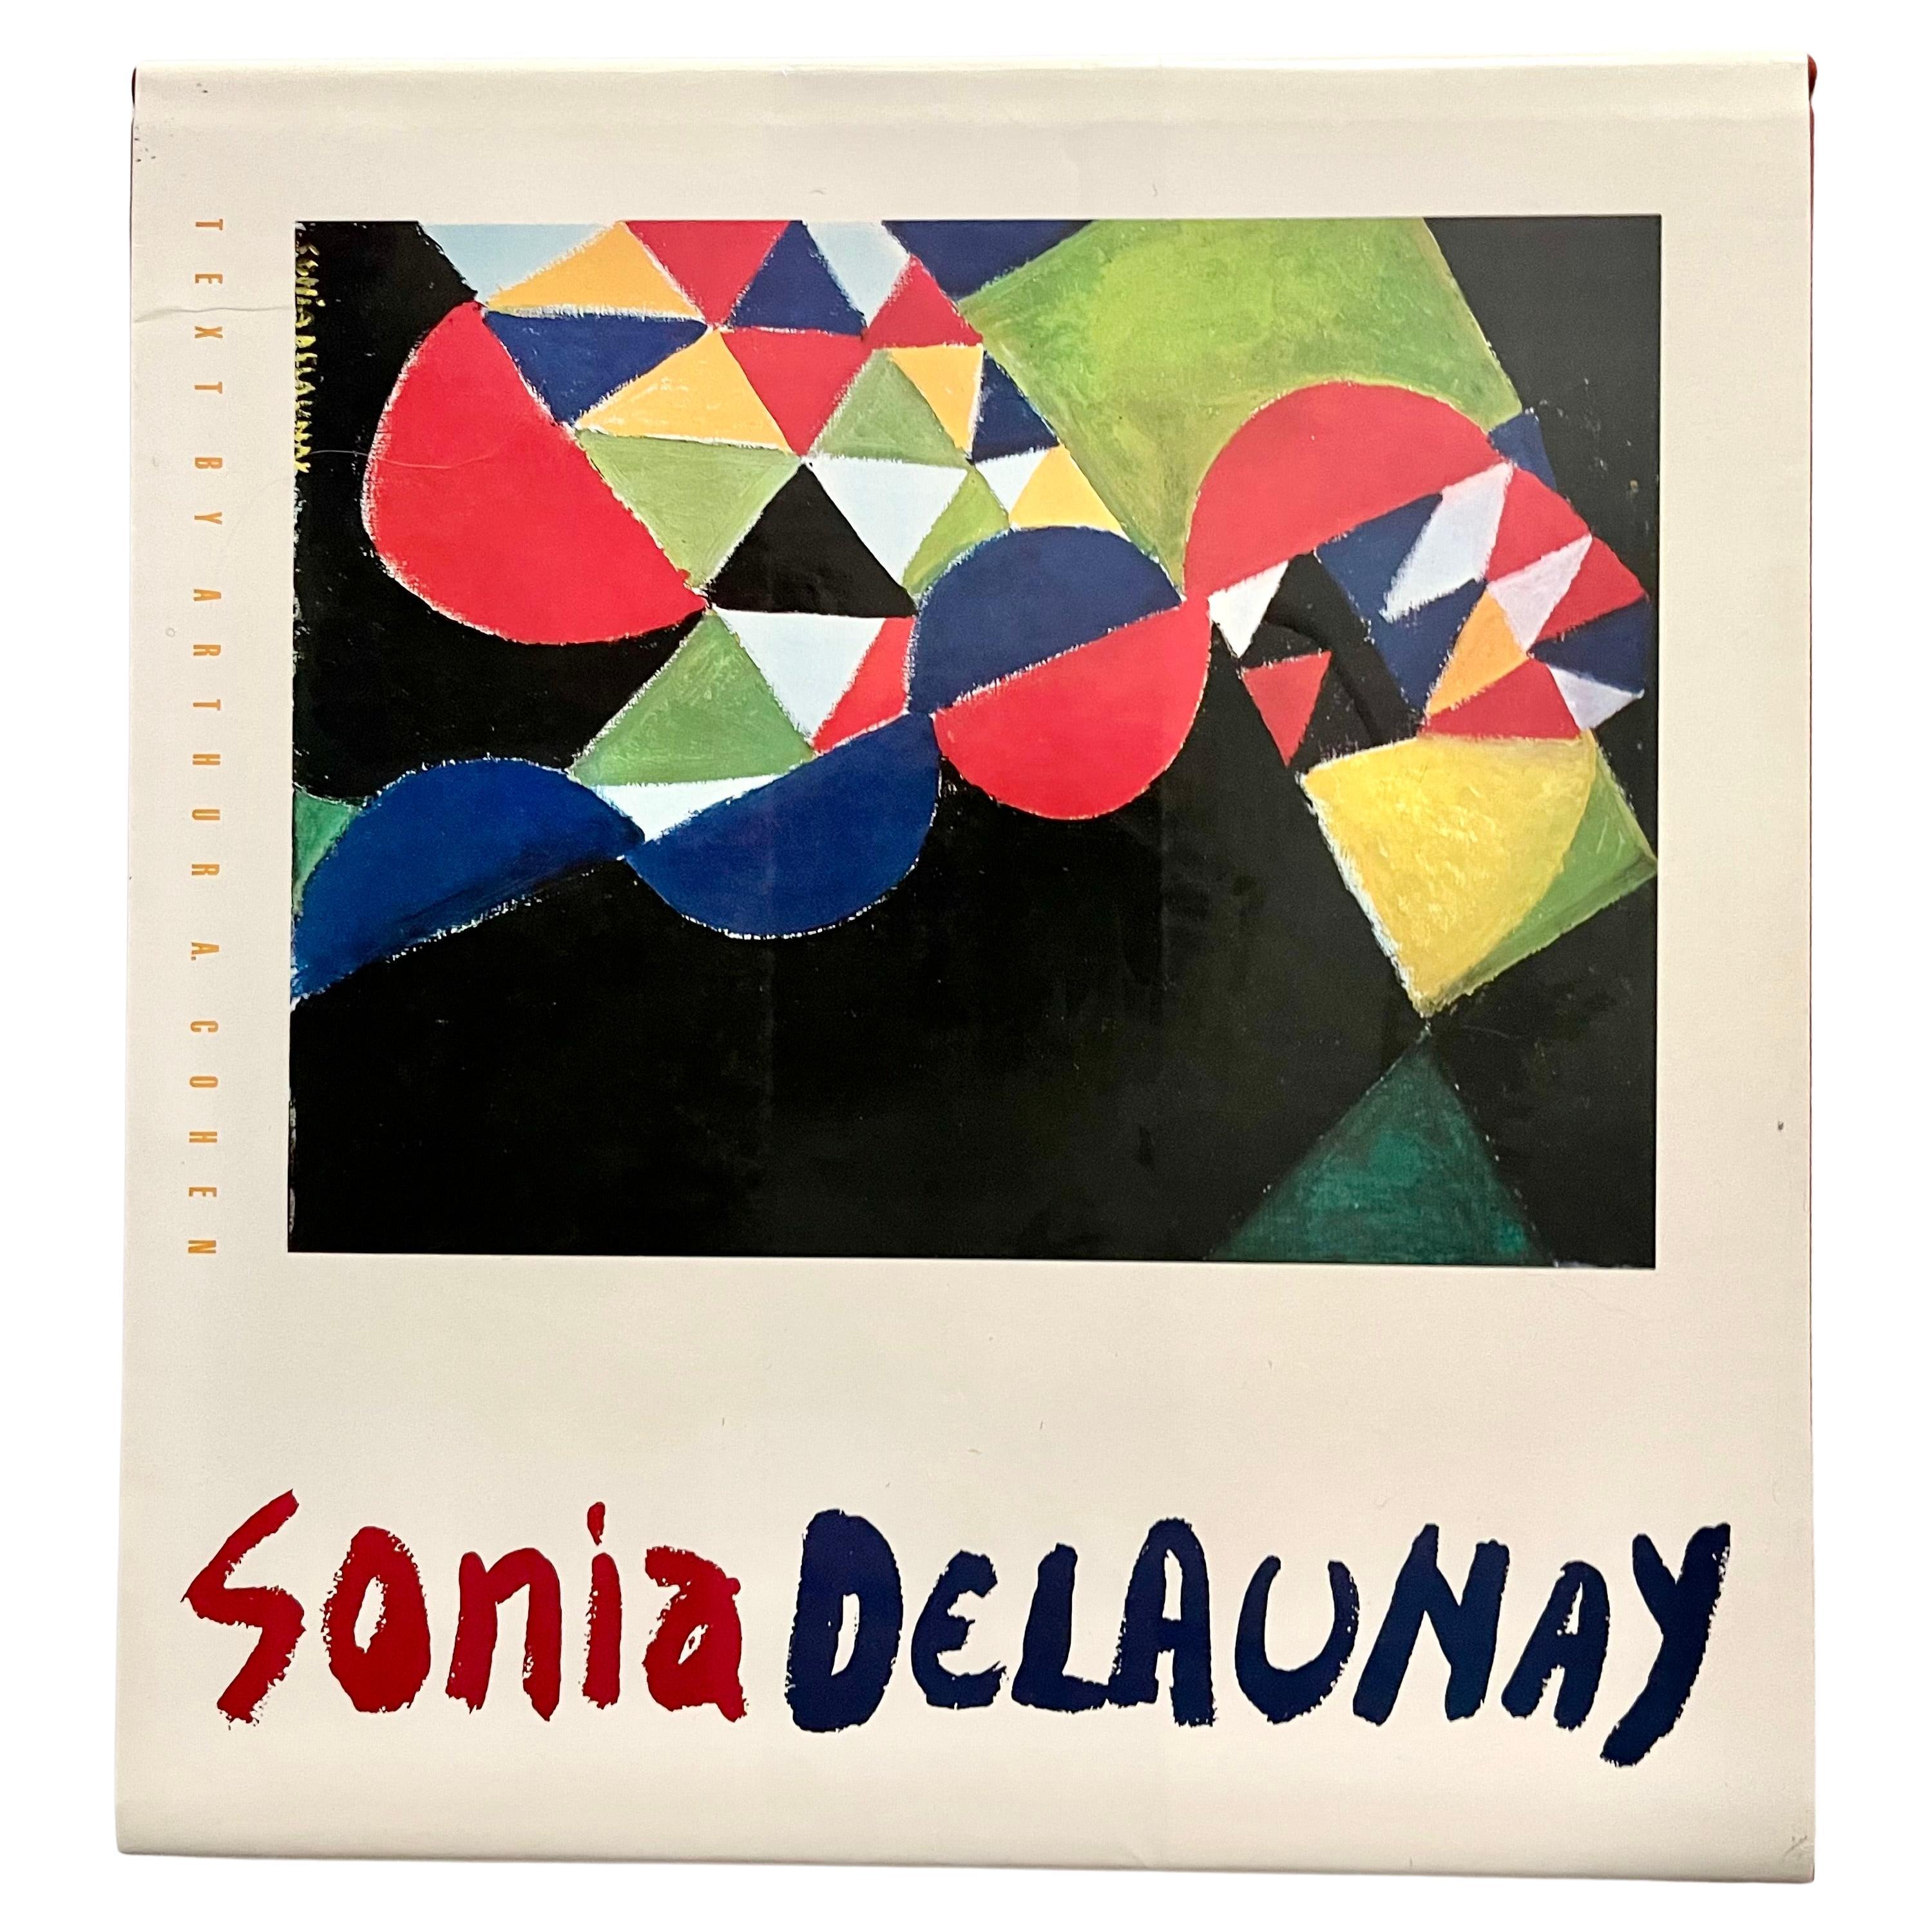 Sonia Delaunay - Arthur A. Cohen - New York, 1988